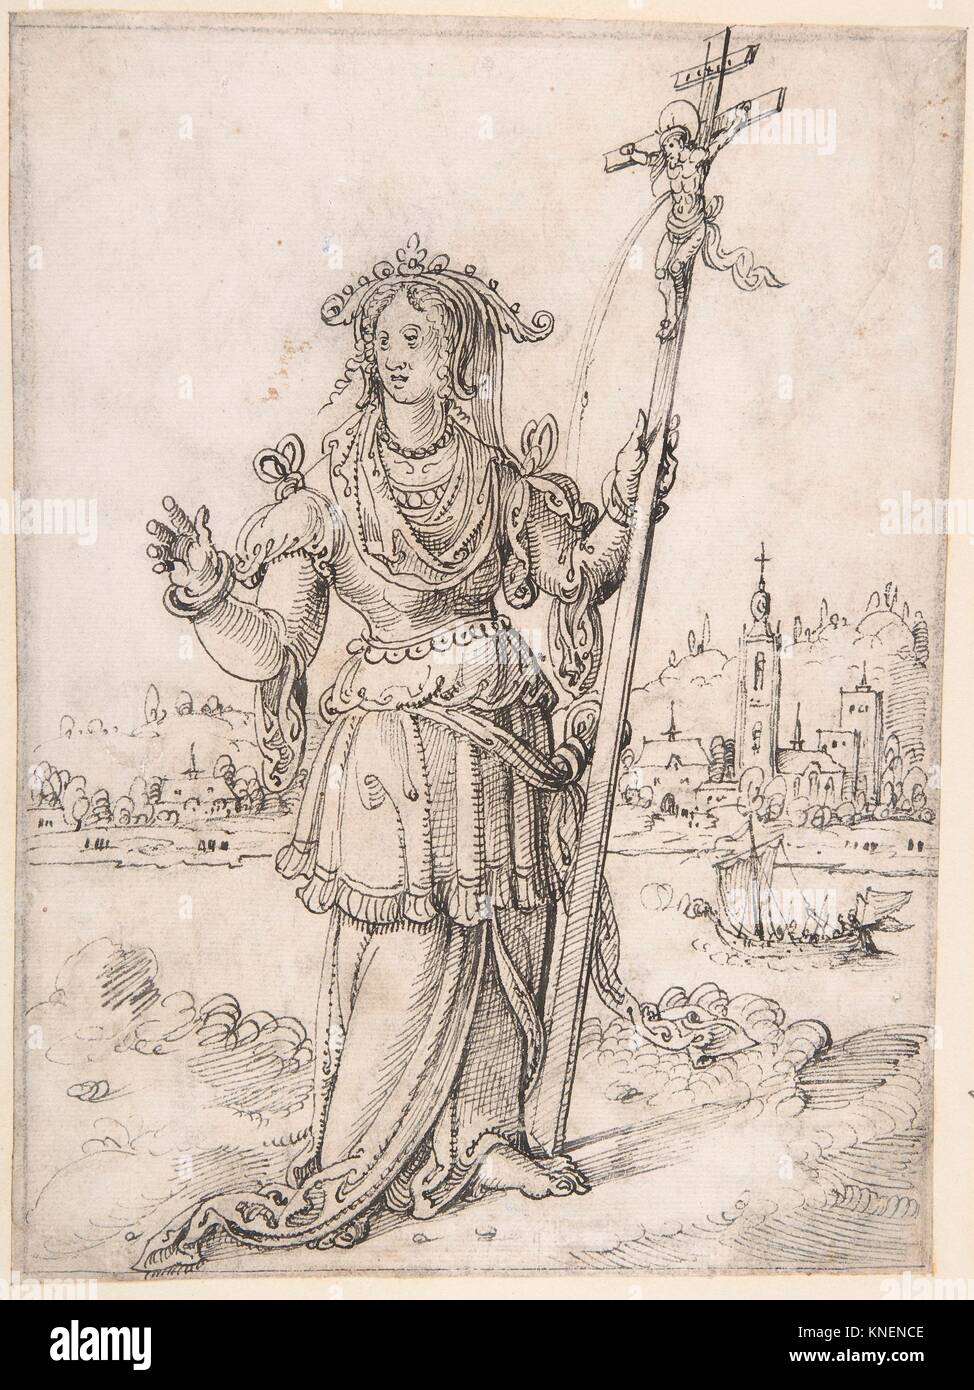 Allegorical Figure (Faith?). Artist: Pieter Cornelisz Kunst (Netherlandish, Leiden 1489/90-1560/61 Leiden); Date: early 16th-mid 16th century; Stock Photo